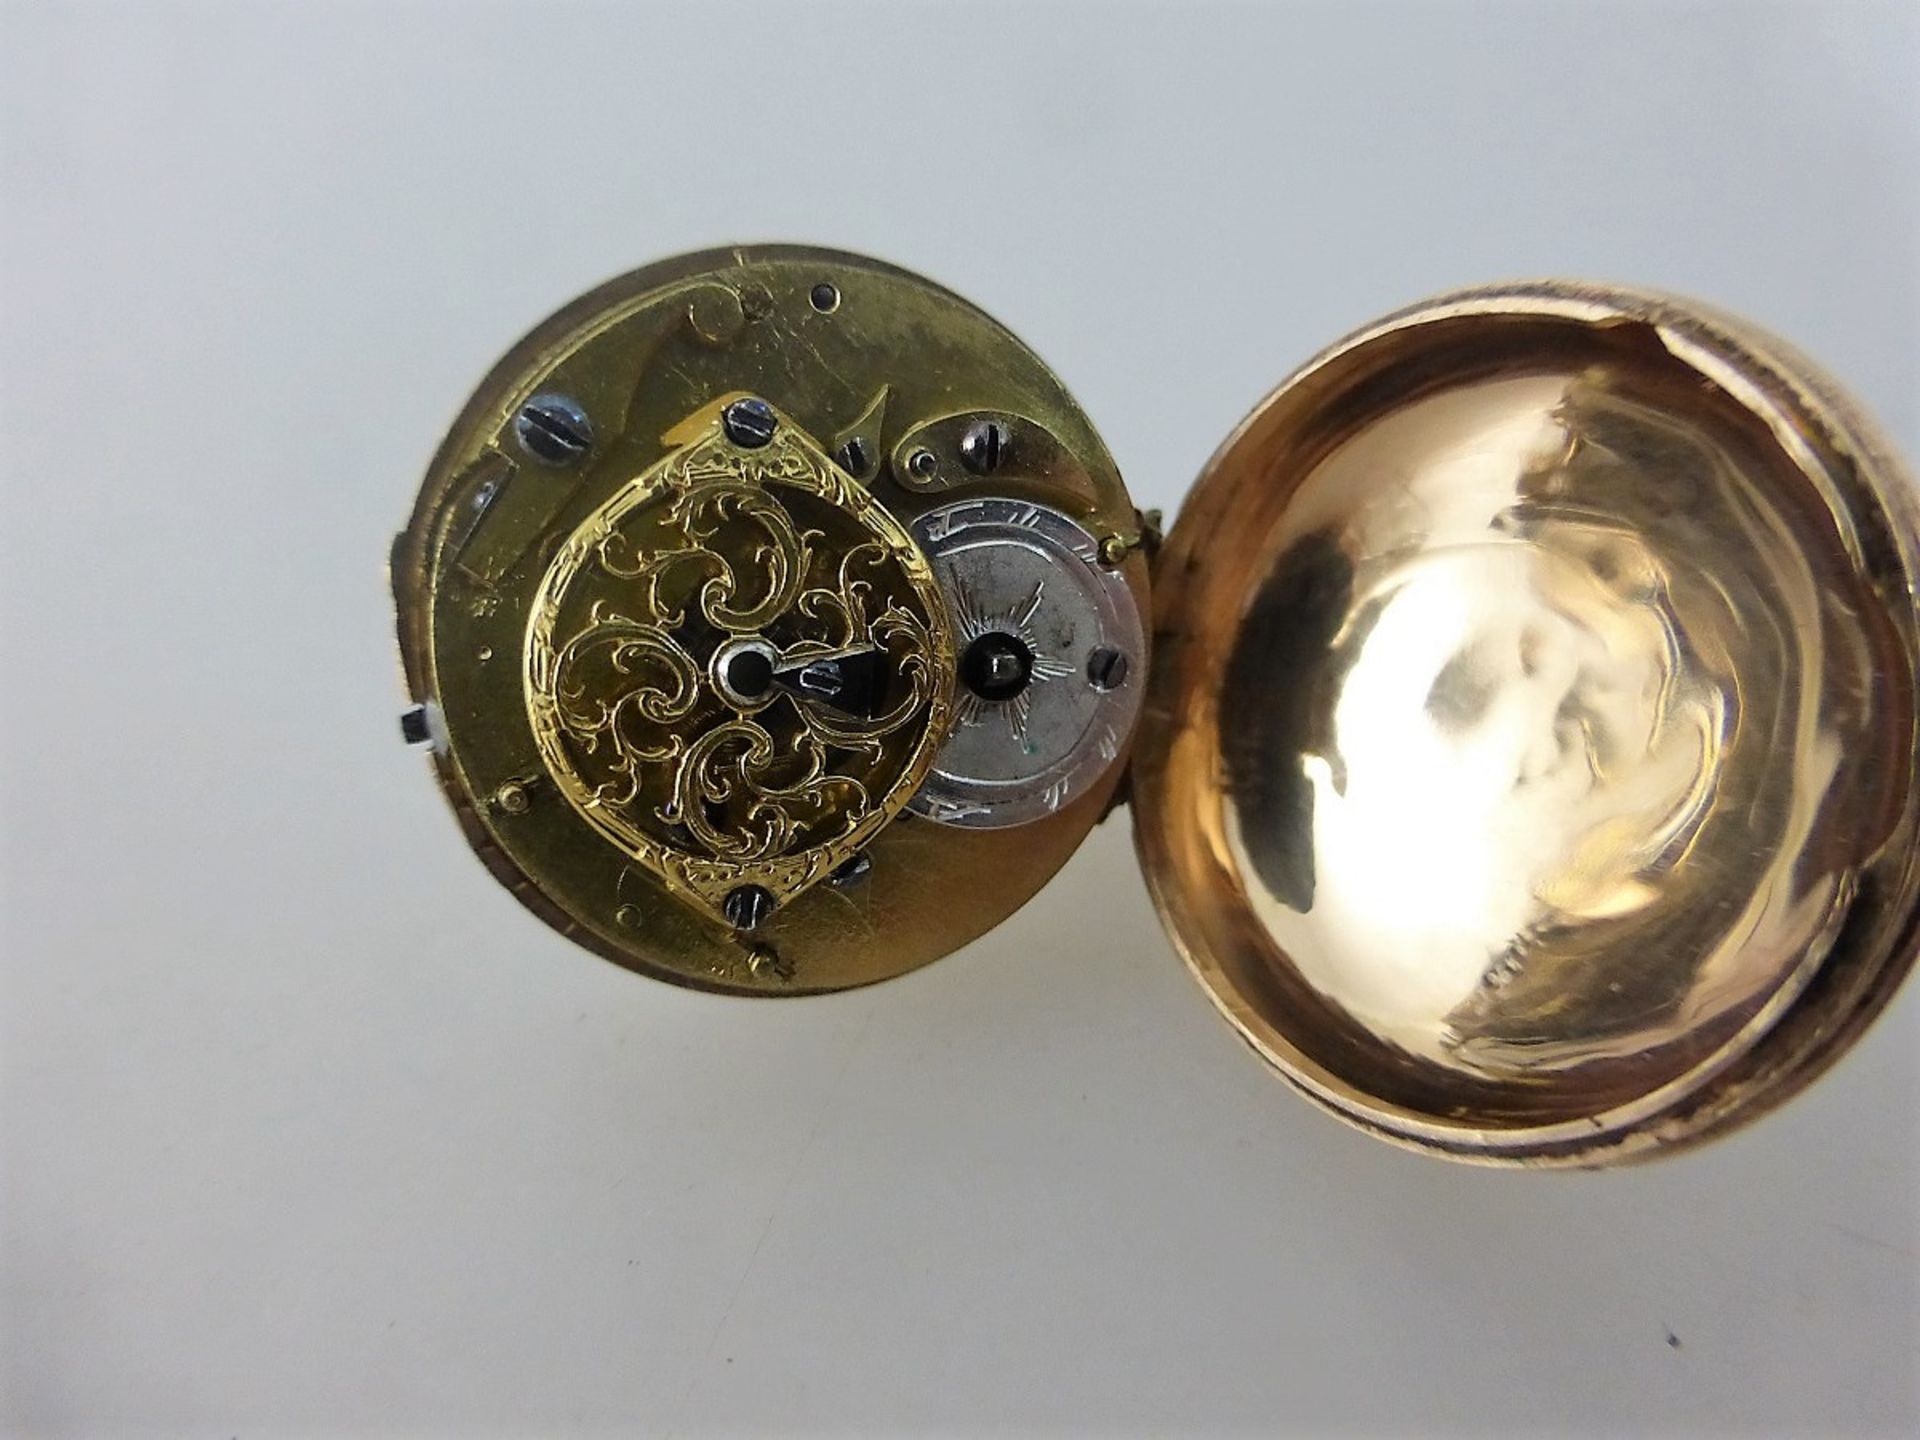 Miniatur Taschenuhr m. Spindelwerk - Image 4 of 4